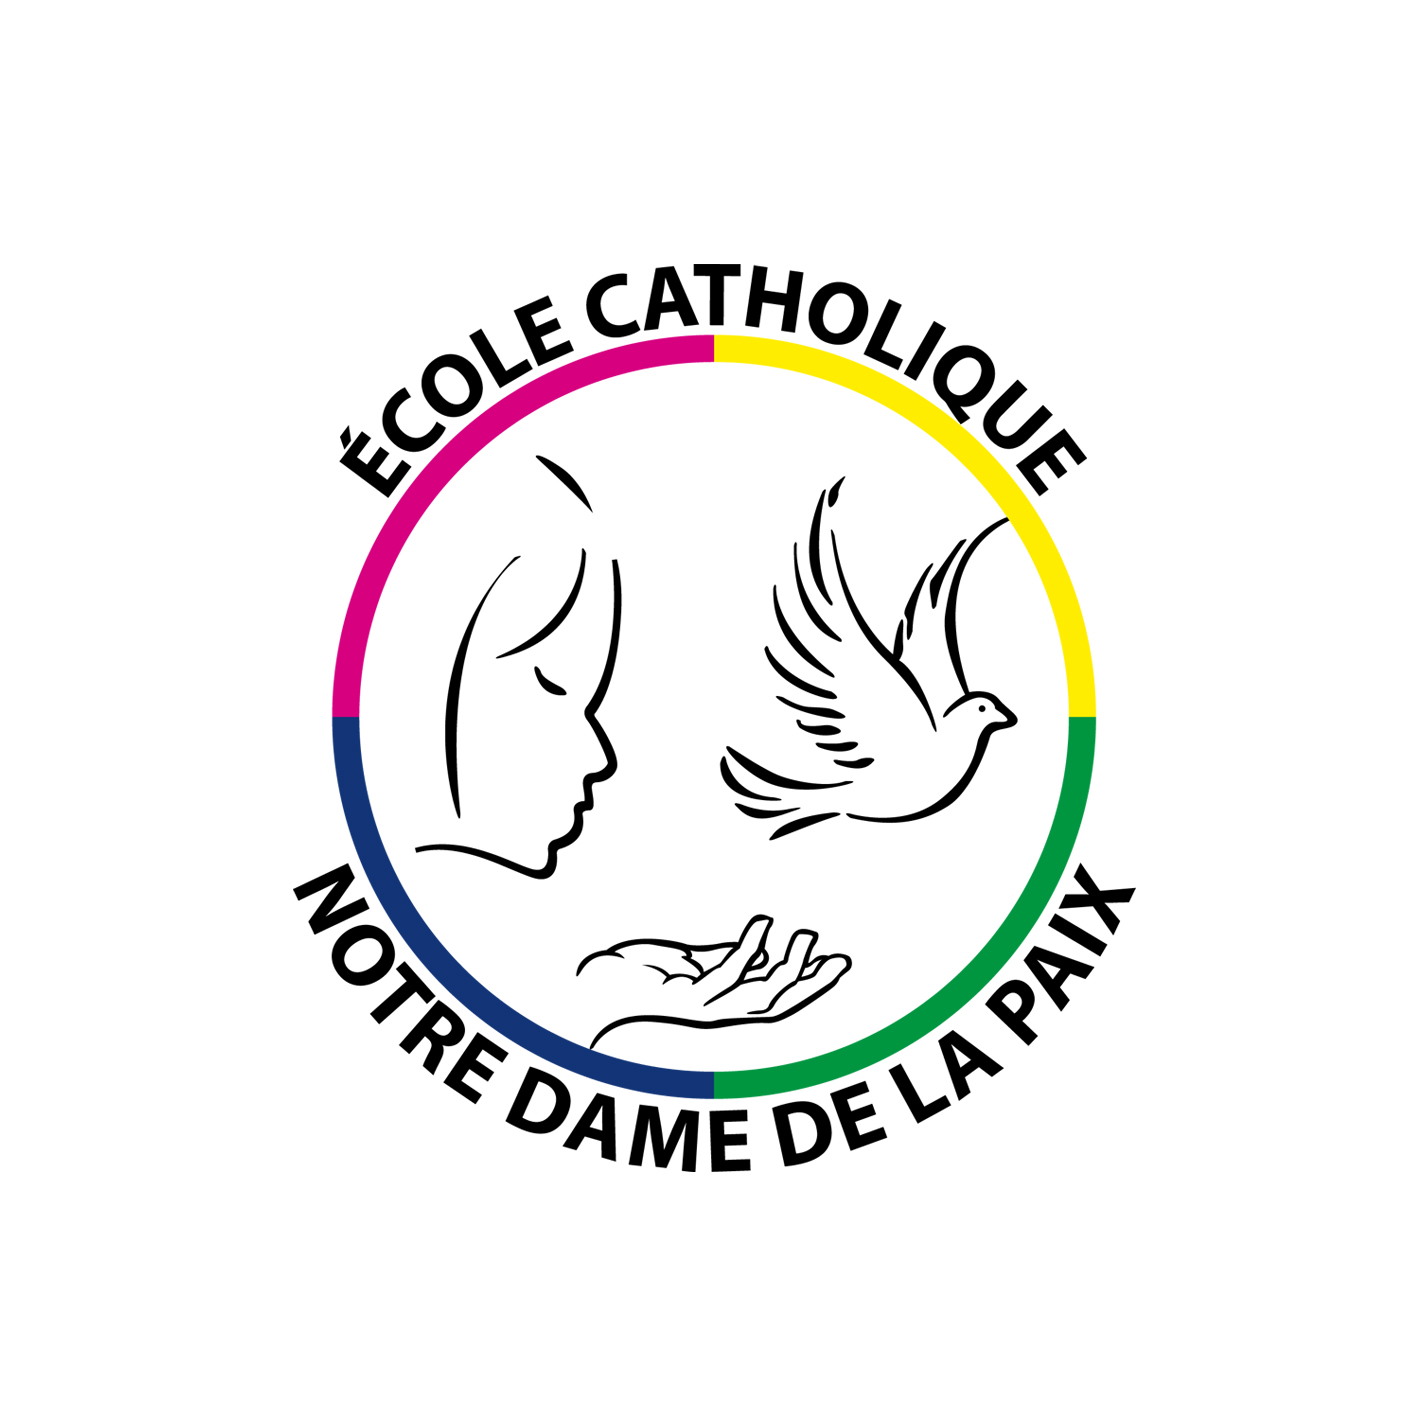 ÉCOLE Notre Dame de la Paix - St. Denis